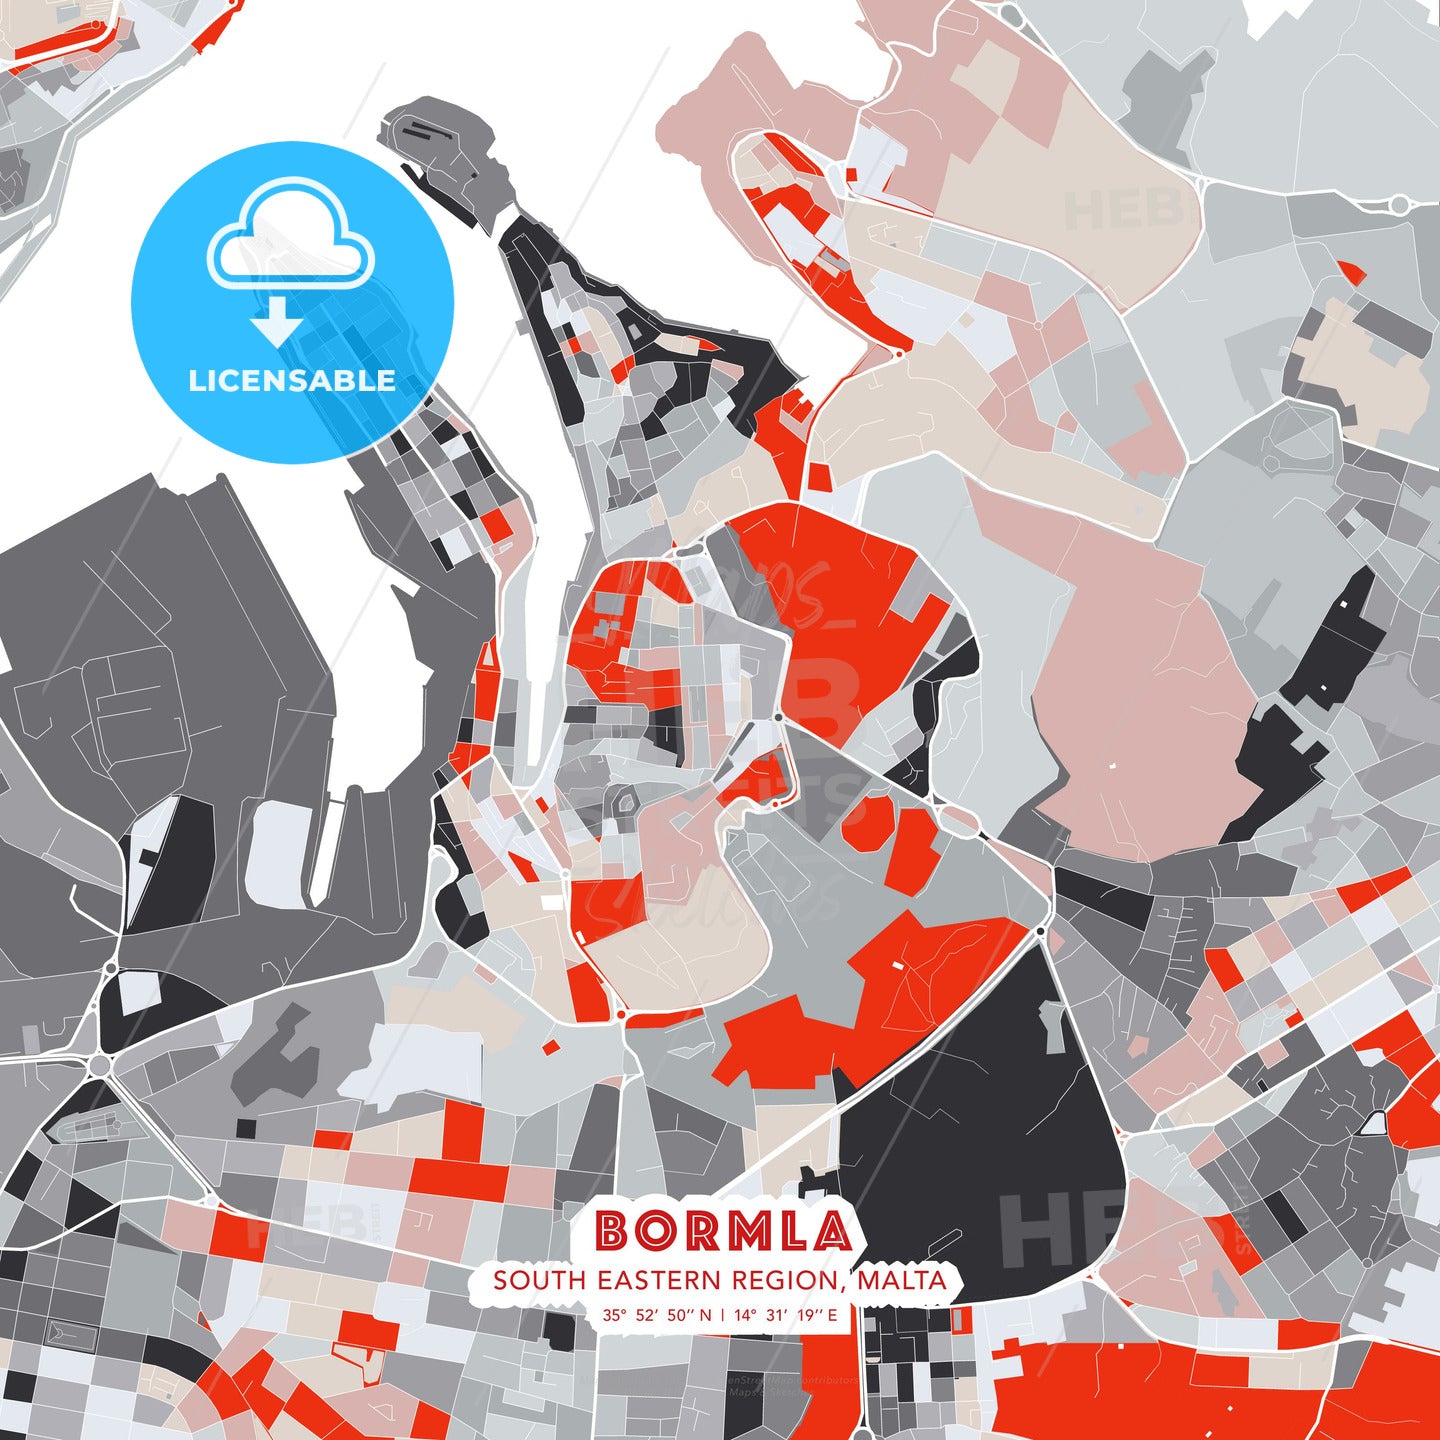 Bormla, South Eastern Region, Malta, modern map - HEBSTREITS Sketches